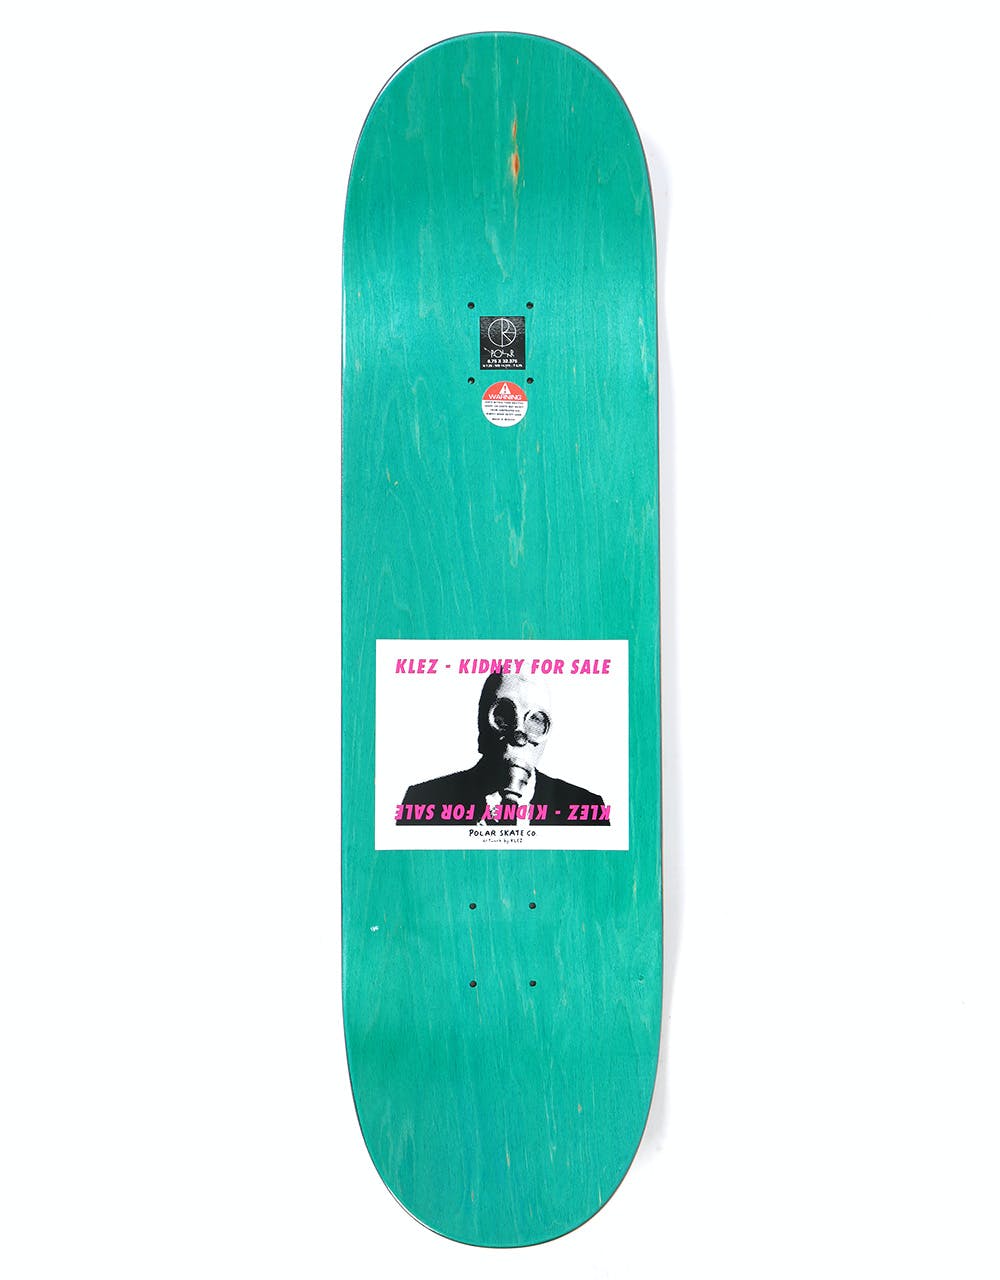 Polar Klez Kidney For Sale Skateboard Deck - 8.75"